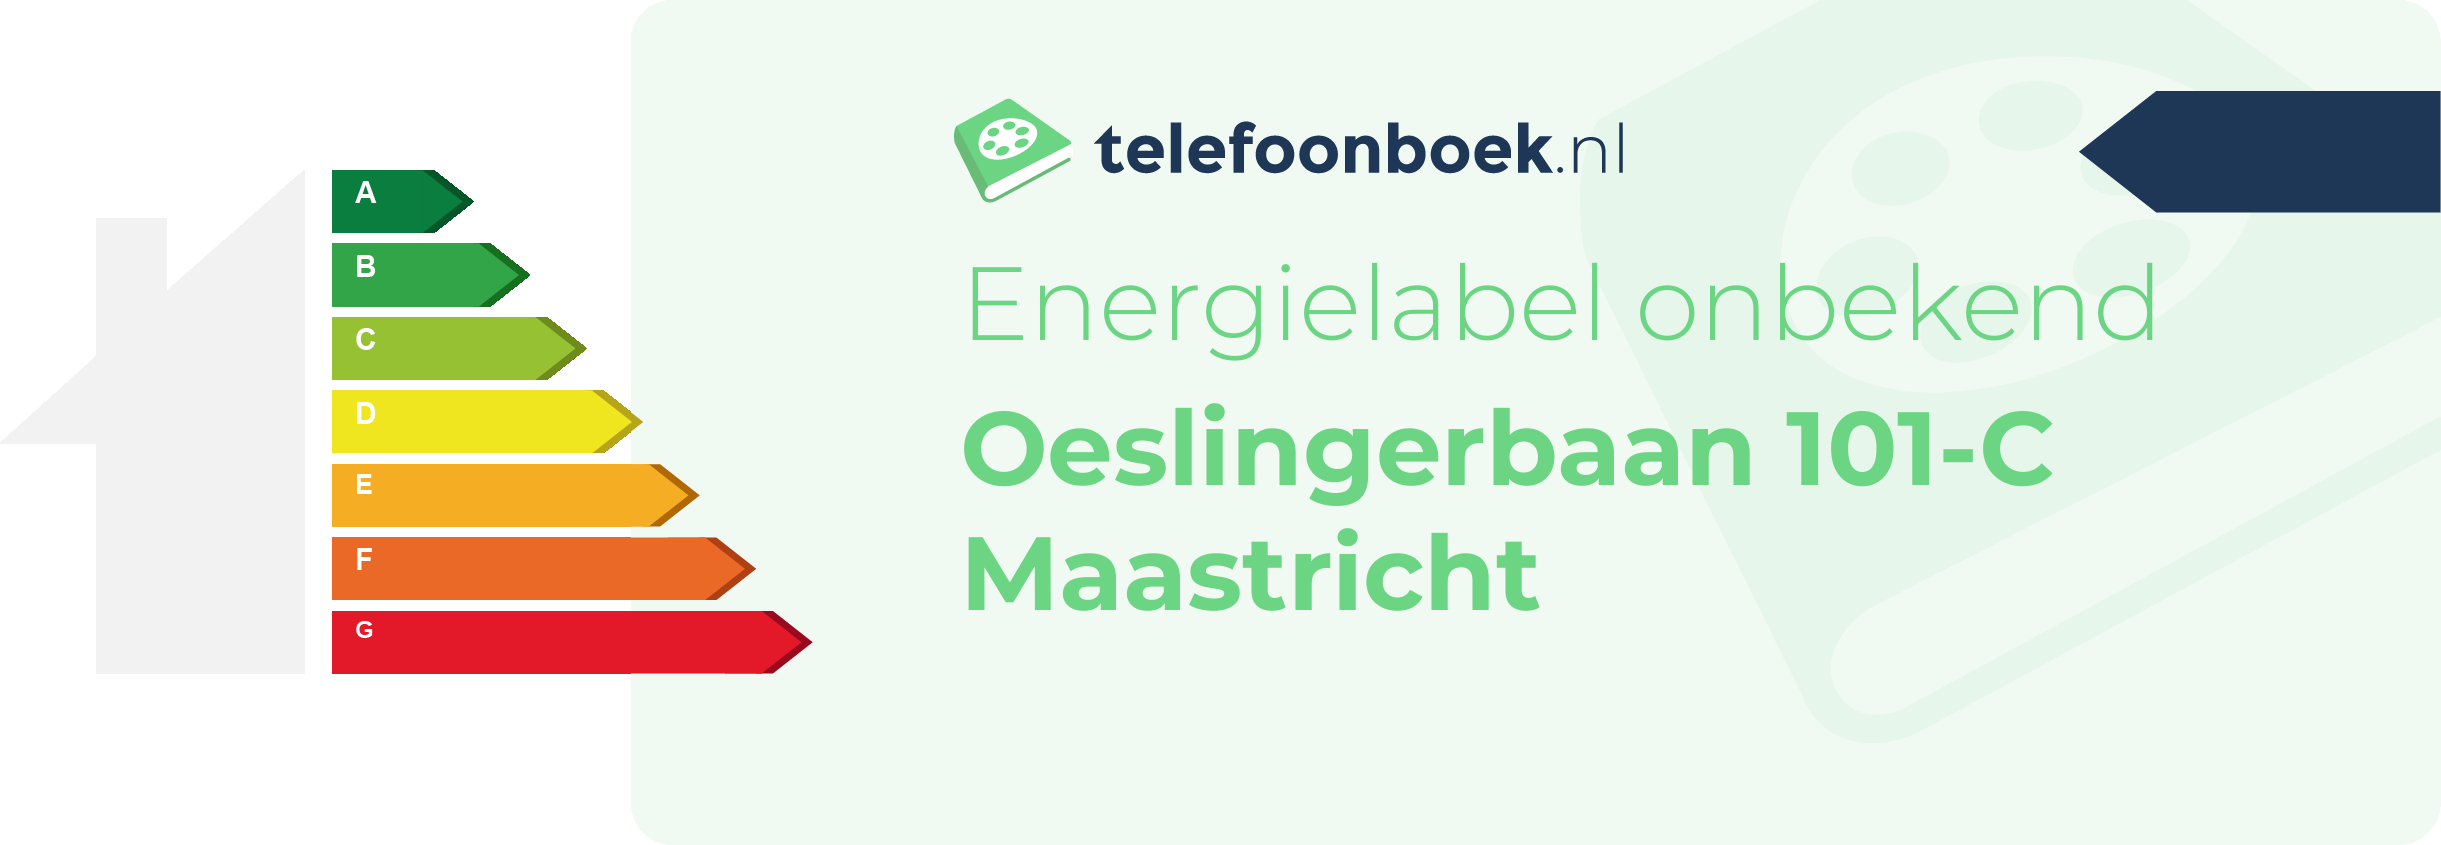 Energielabel Oeslingerbaan 101-C Maastricht